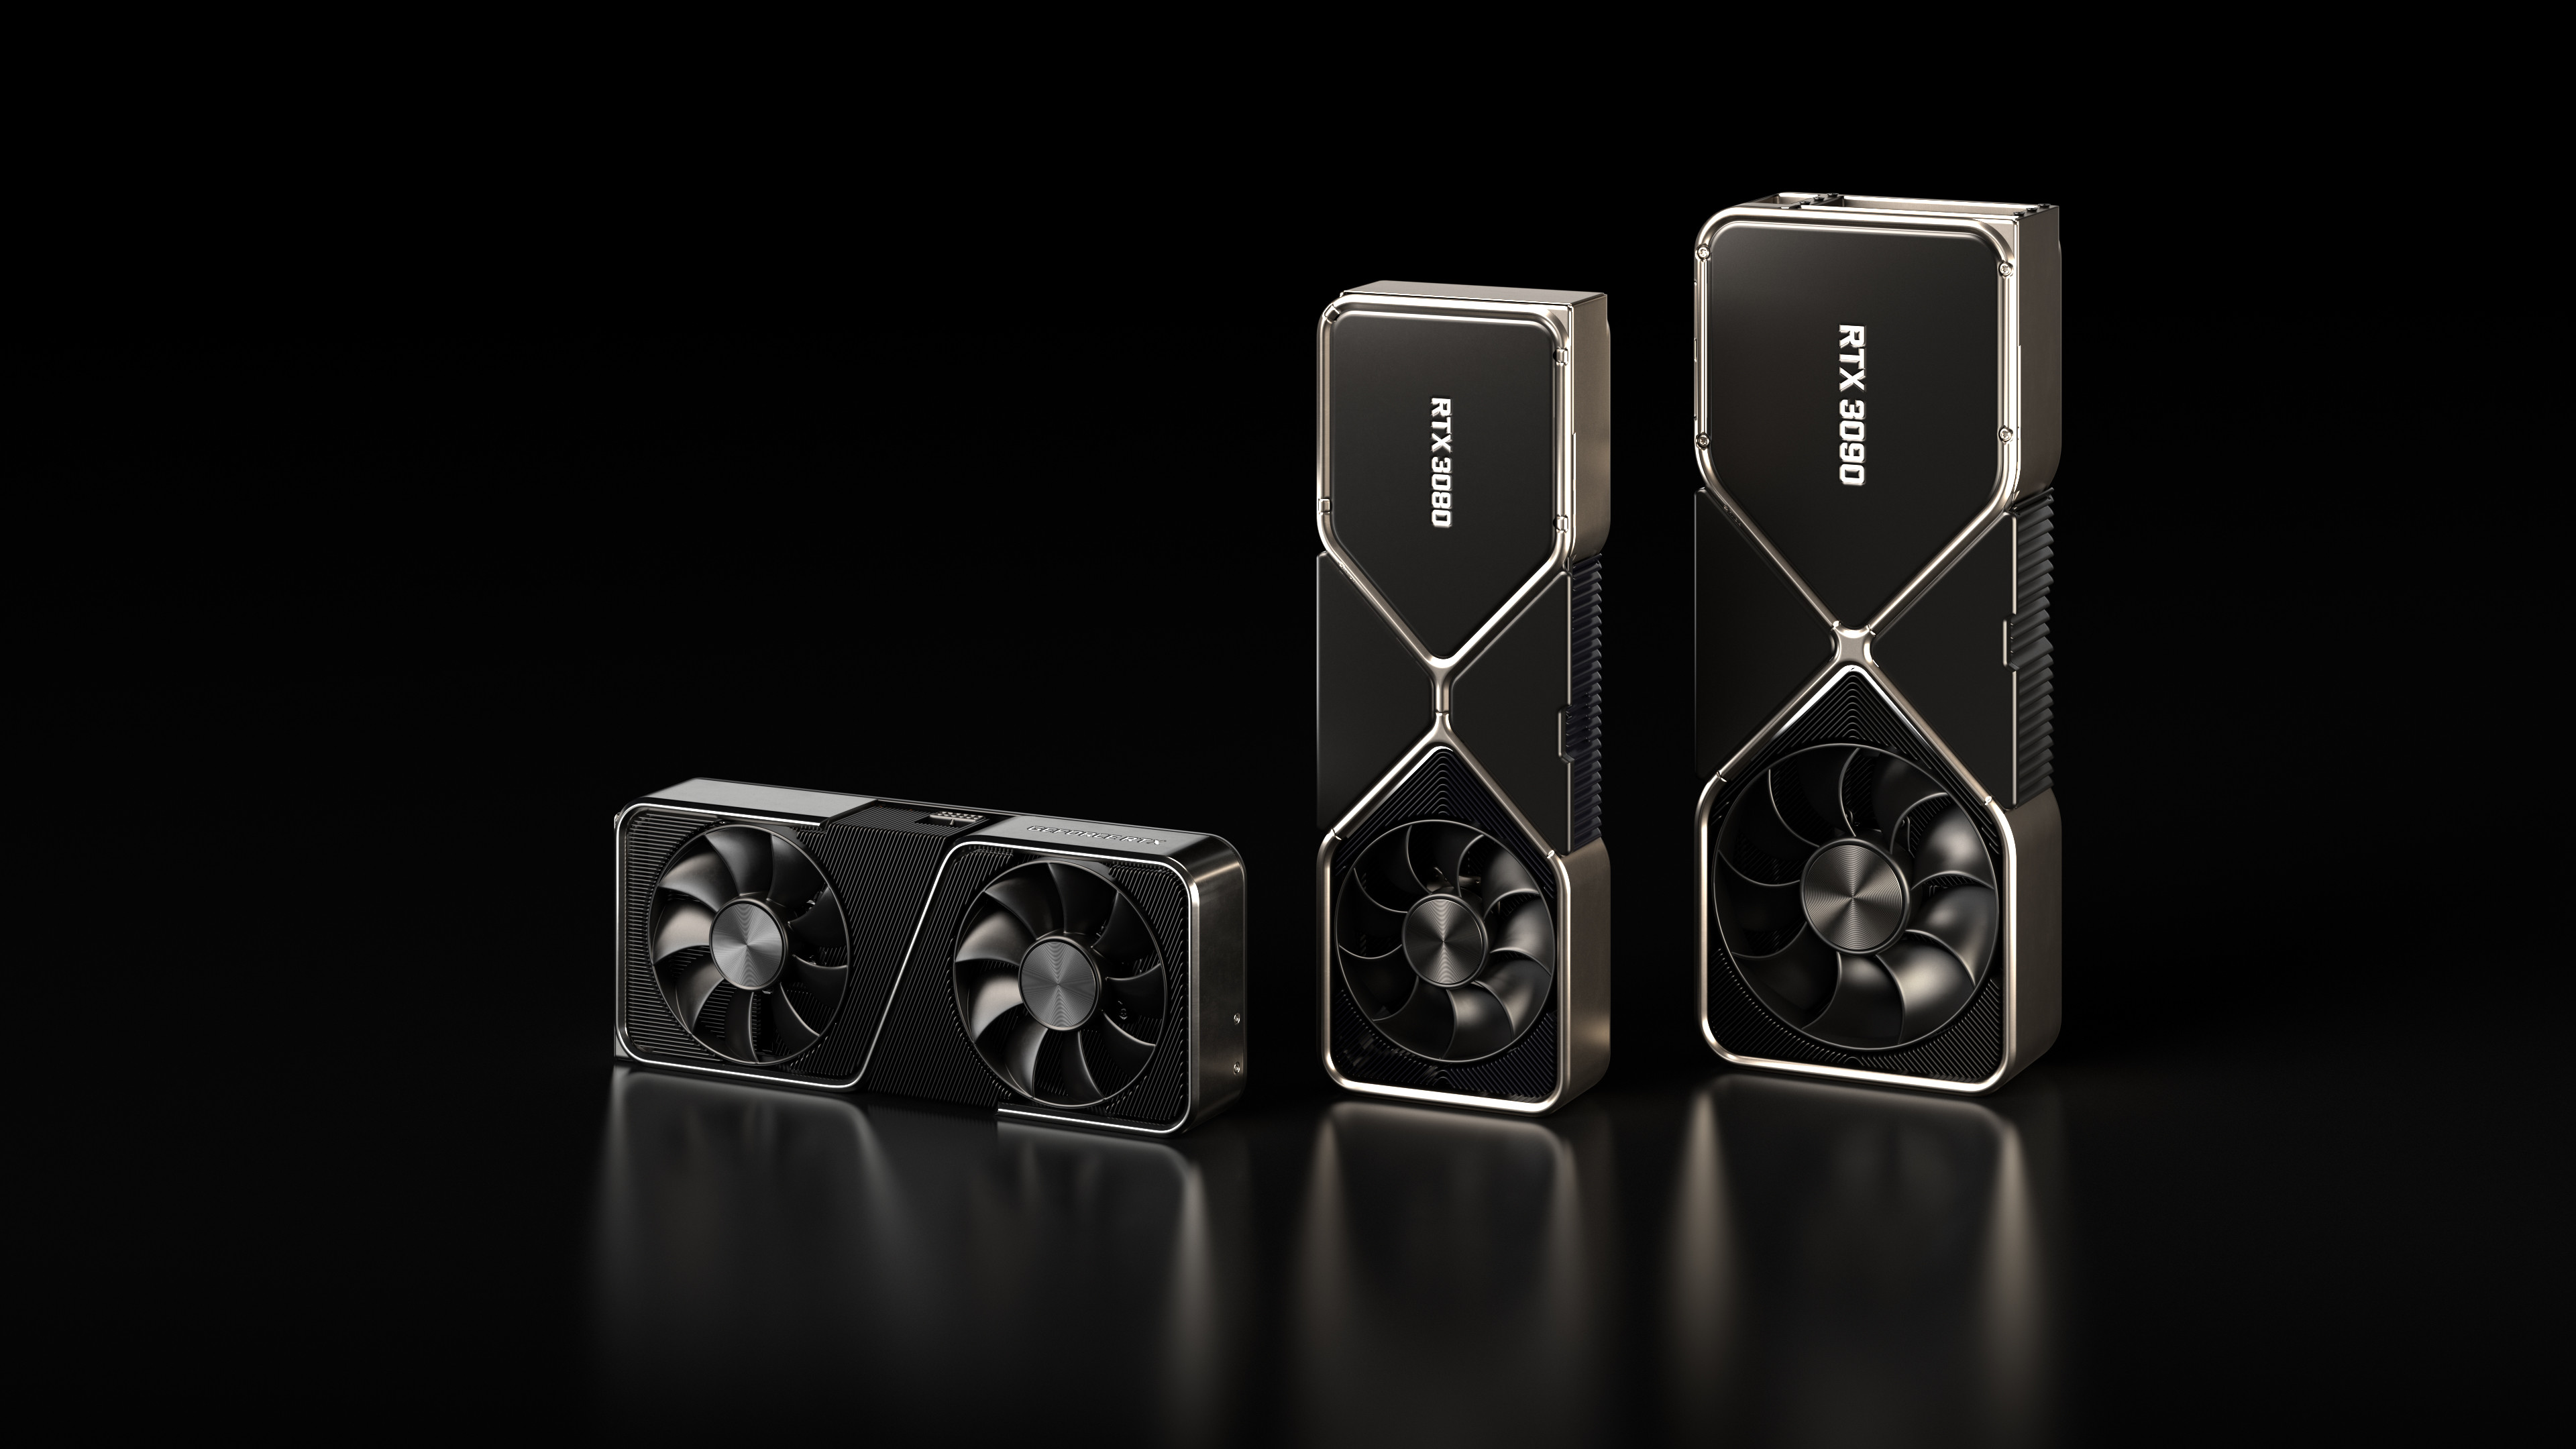 900 วัตต์กำลังจะมา มีรายงานว่า Nvidia กำลังทดสอบ GPU ชุดใหม่สำหรับ RTX 4090